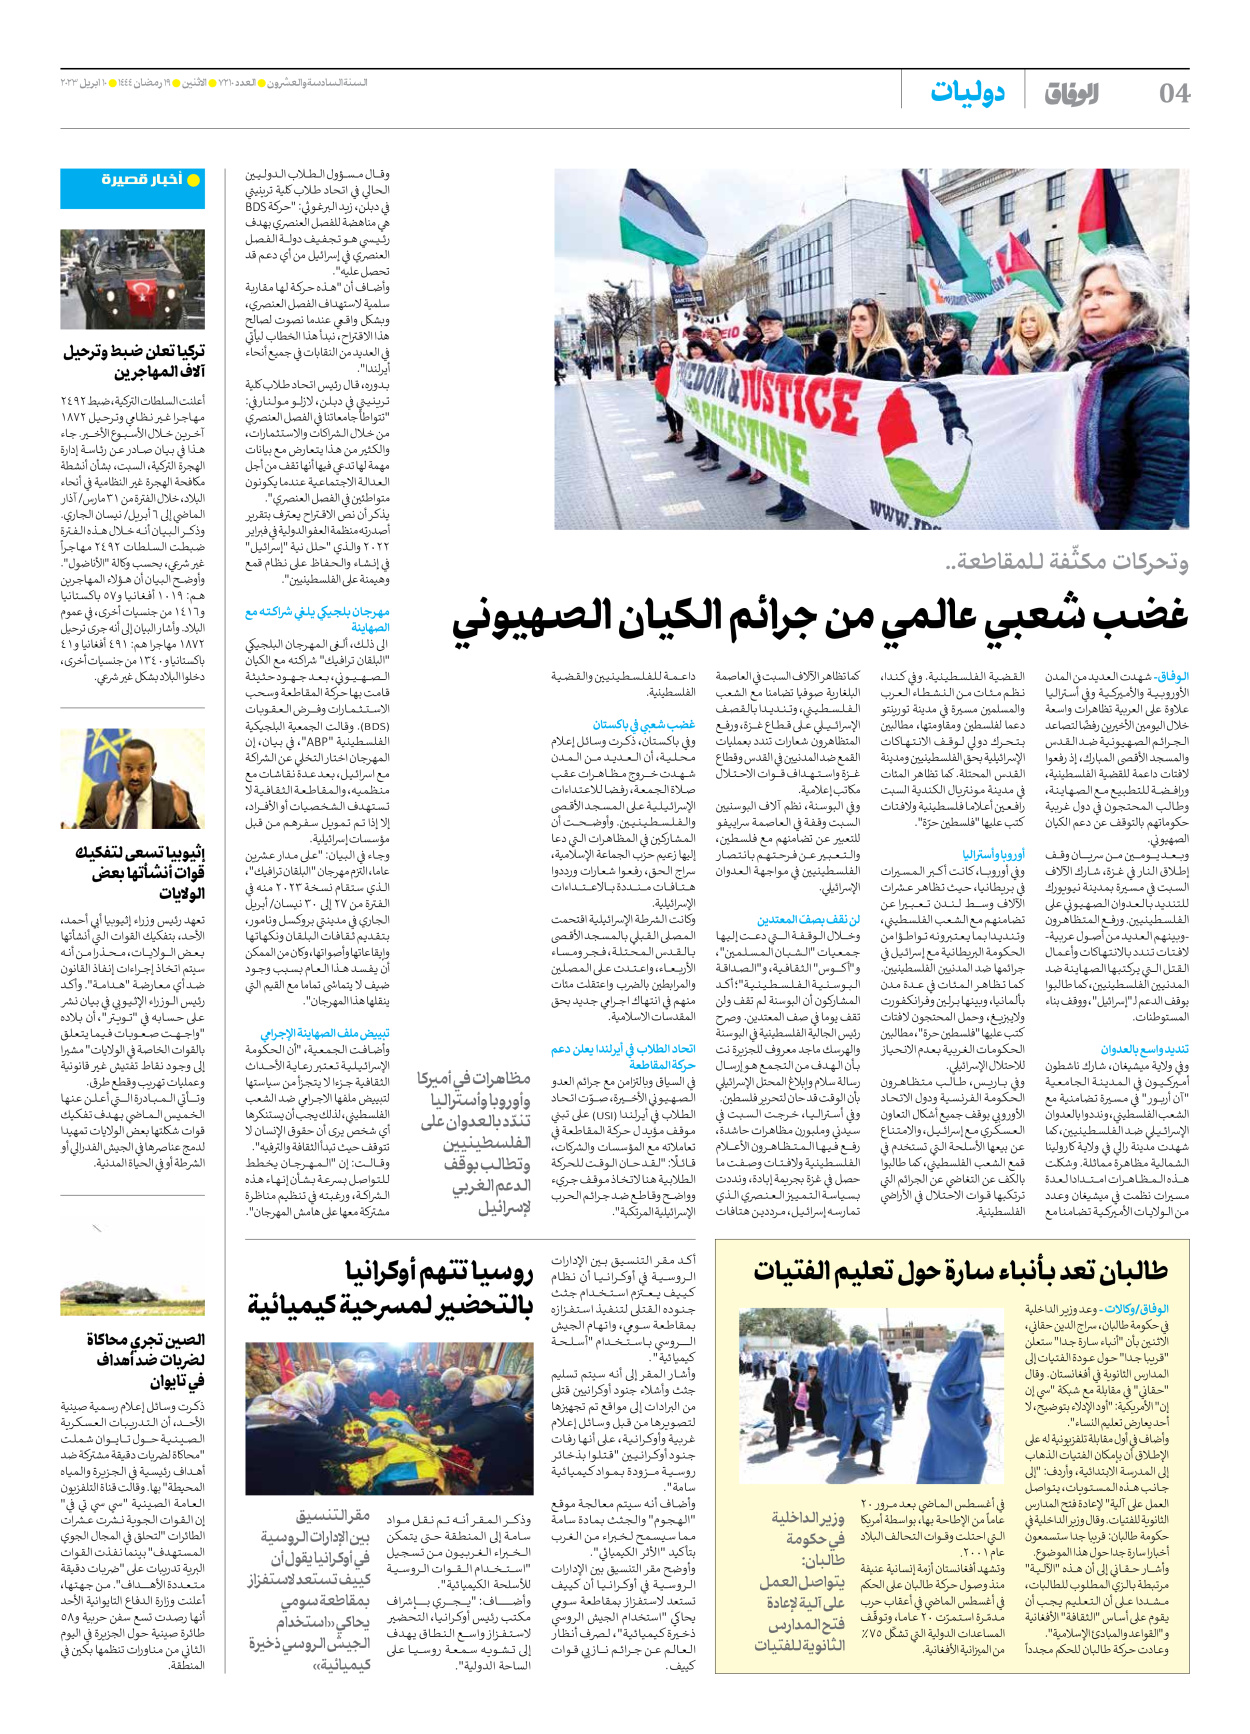 صحیفة ایران الدولیة الوفاق - العدد سبعة آلاف ومائتان وعشرة - ١٠ أبريل ٢٠٢٣ - الصفحة ٤